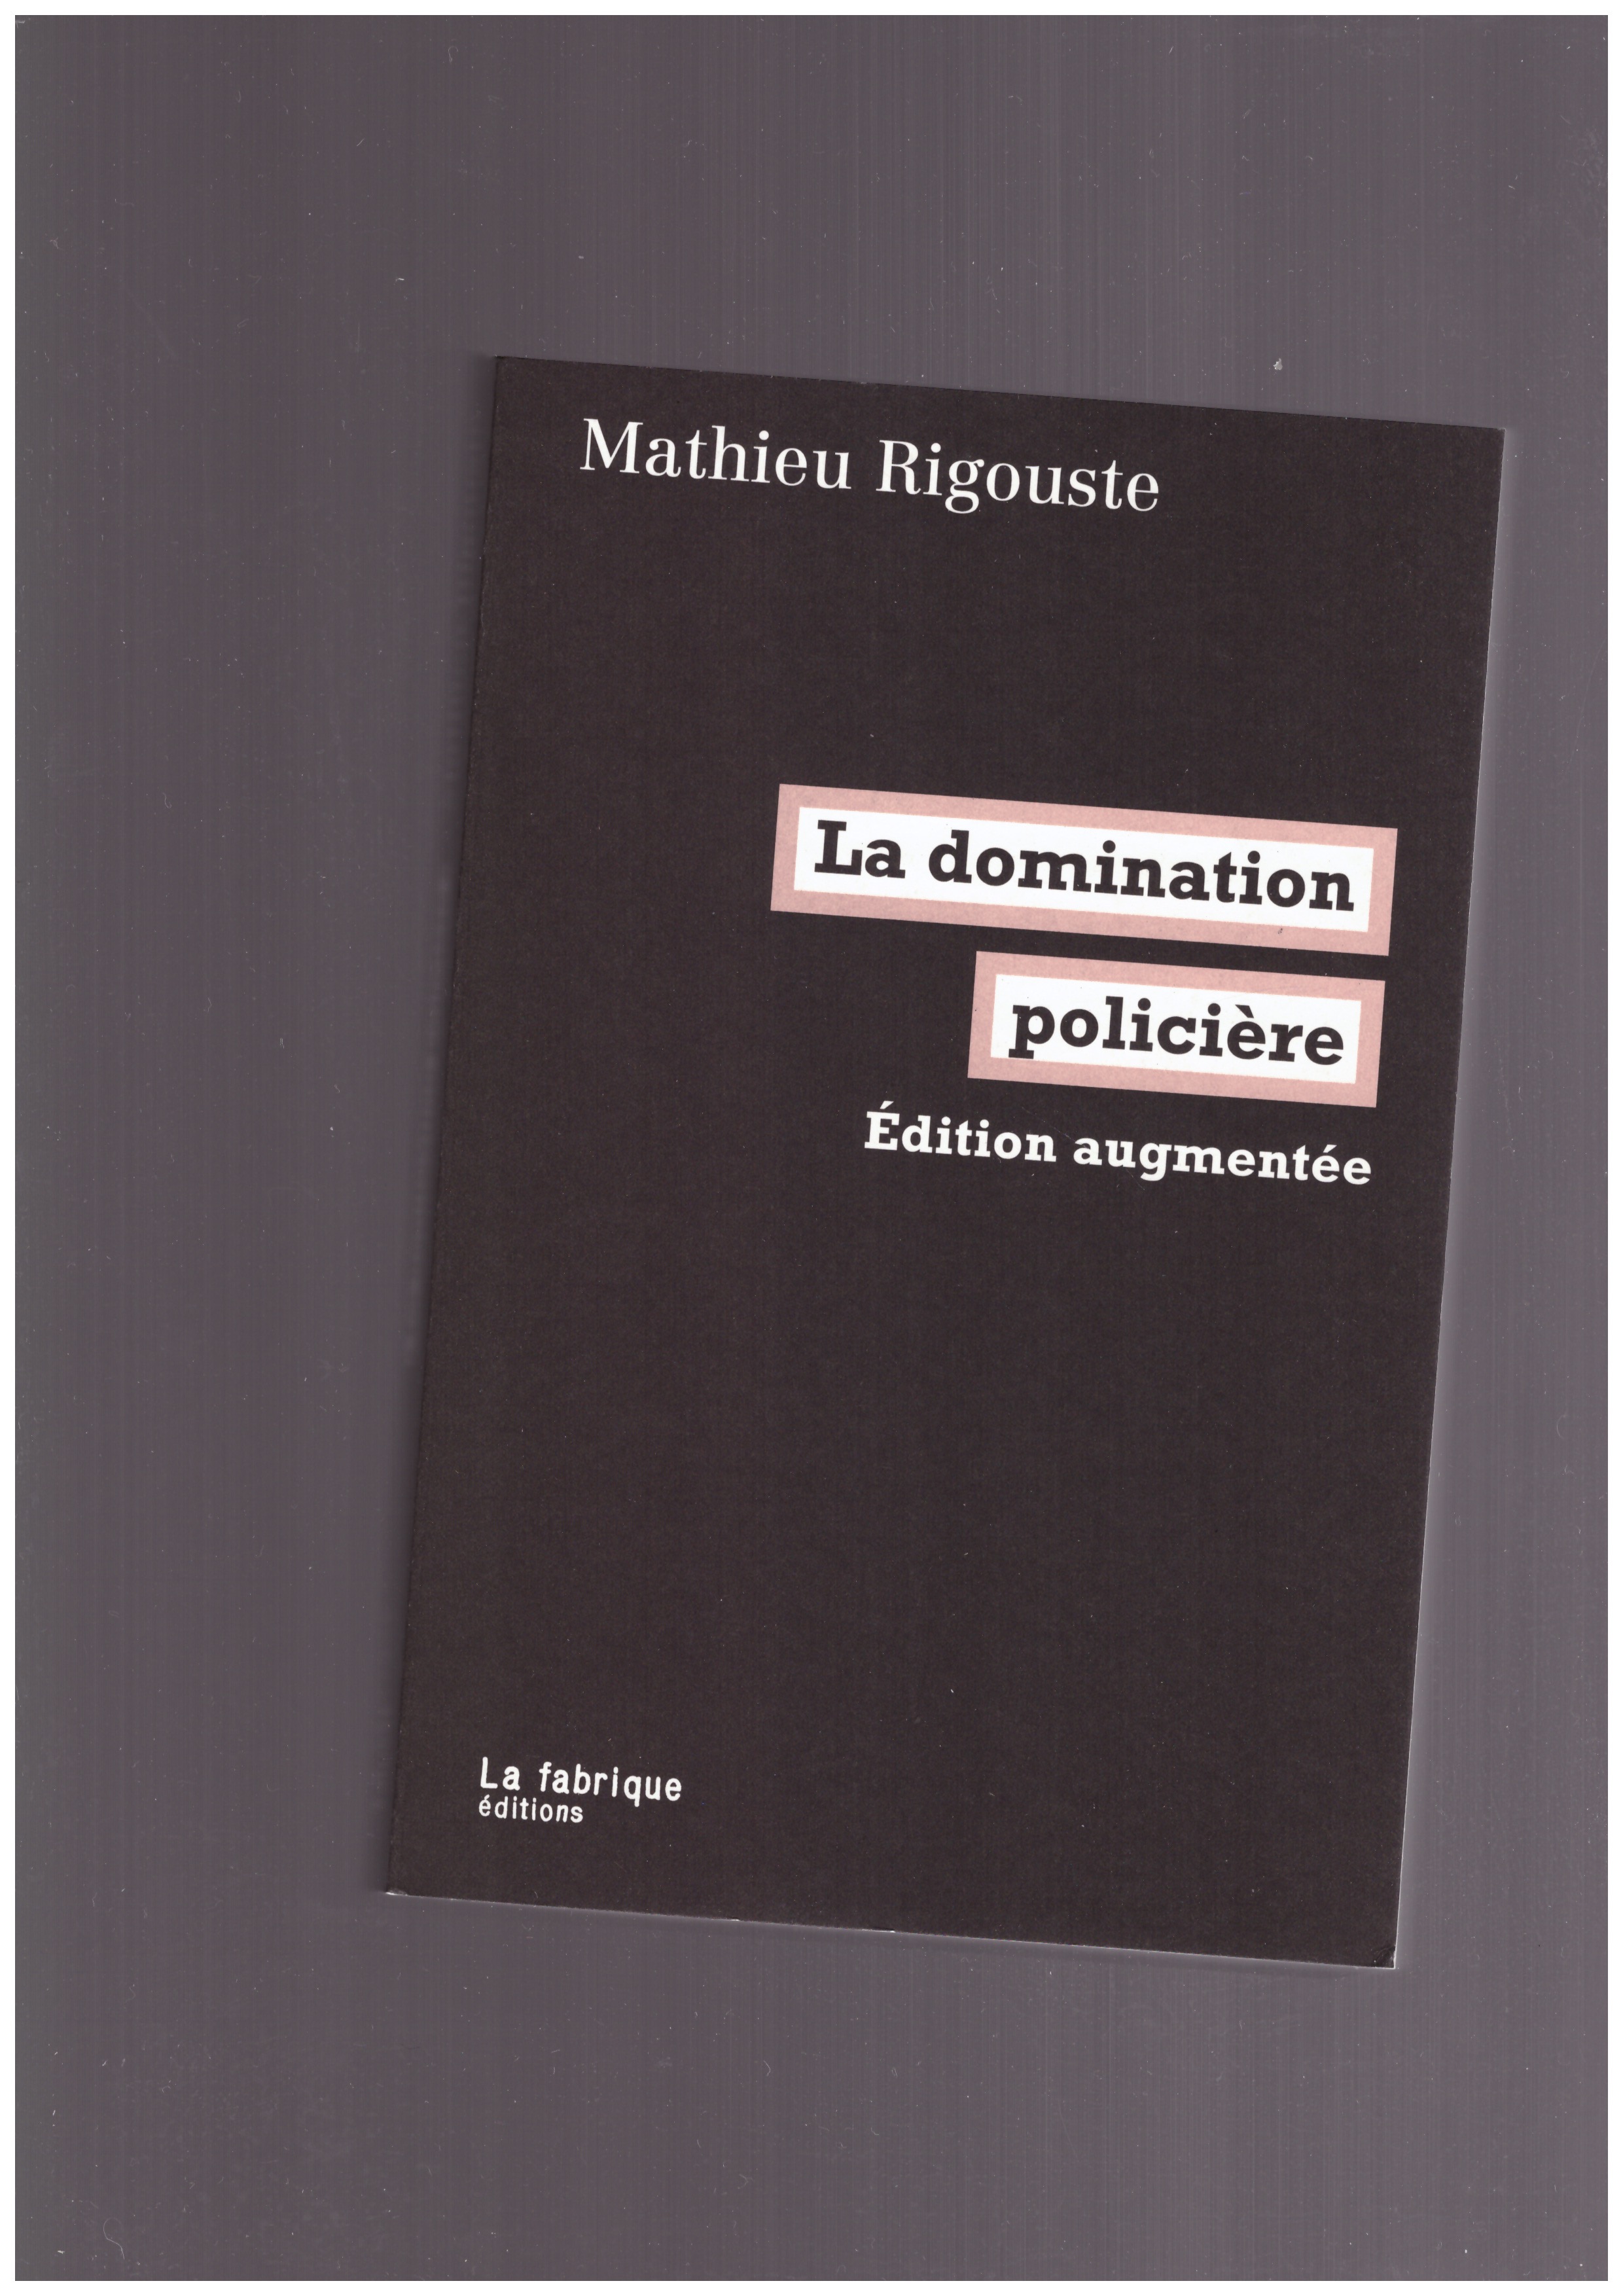 RIGOUSTE, Mathieu - La domination policière (édition augmentée)